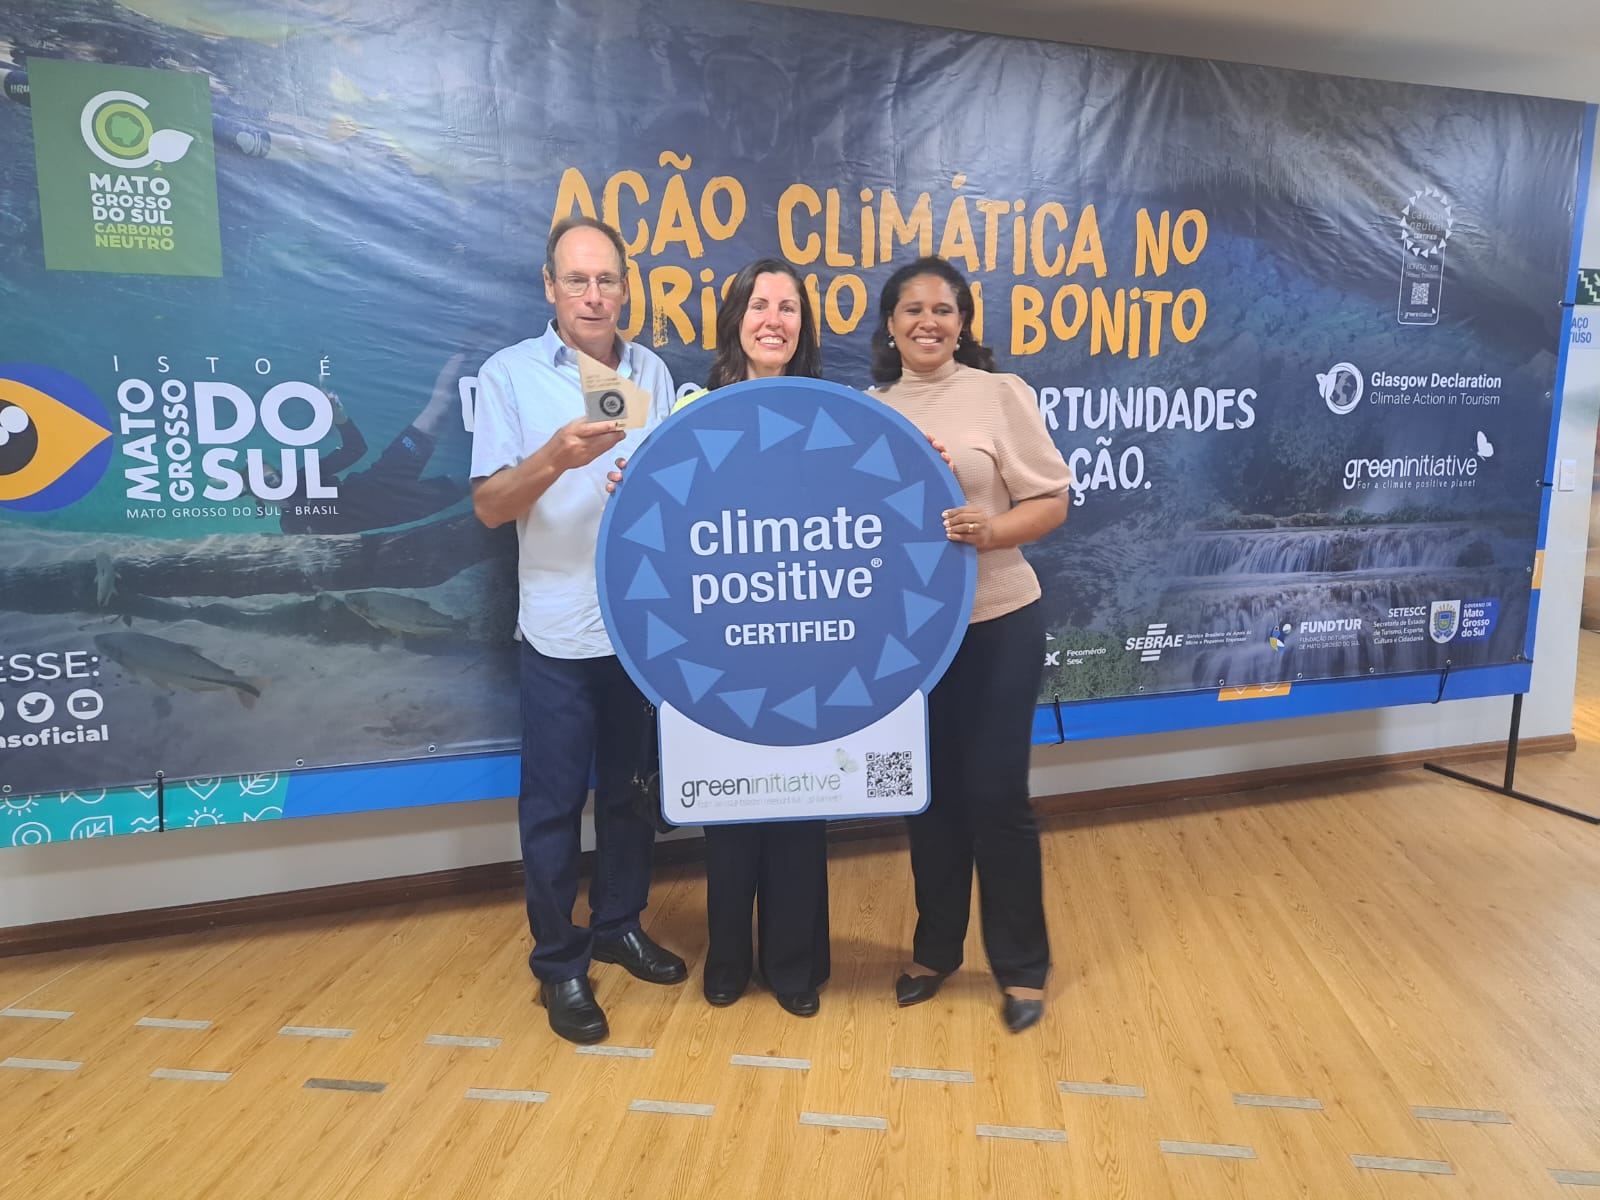 Eduardo Coelho e Simone Coelho, proprietários da Estância Mimosa, recebem a Certificação Carbono Neutro (3)